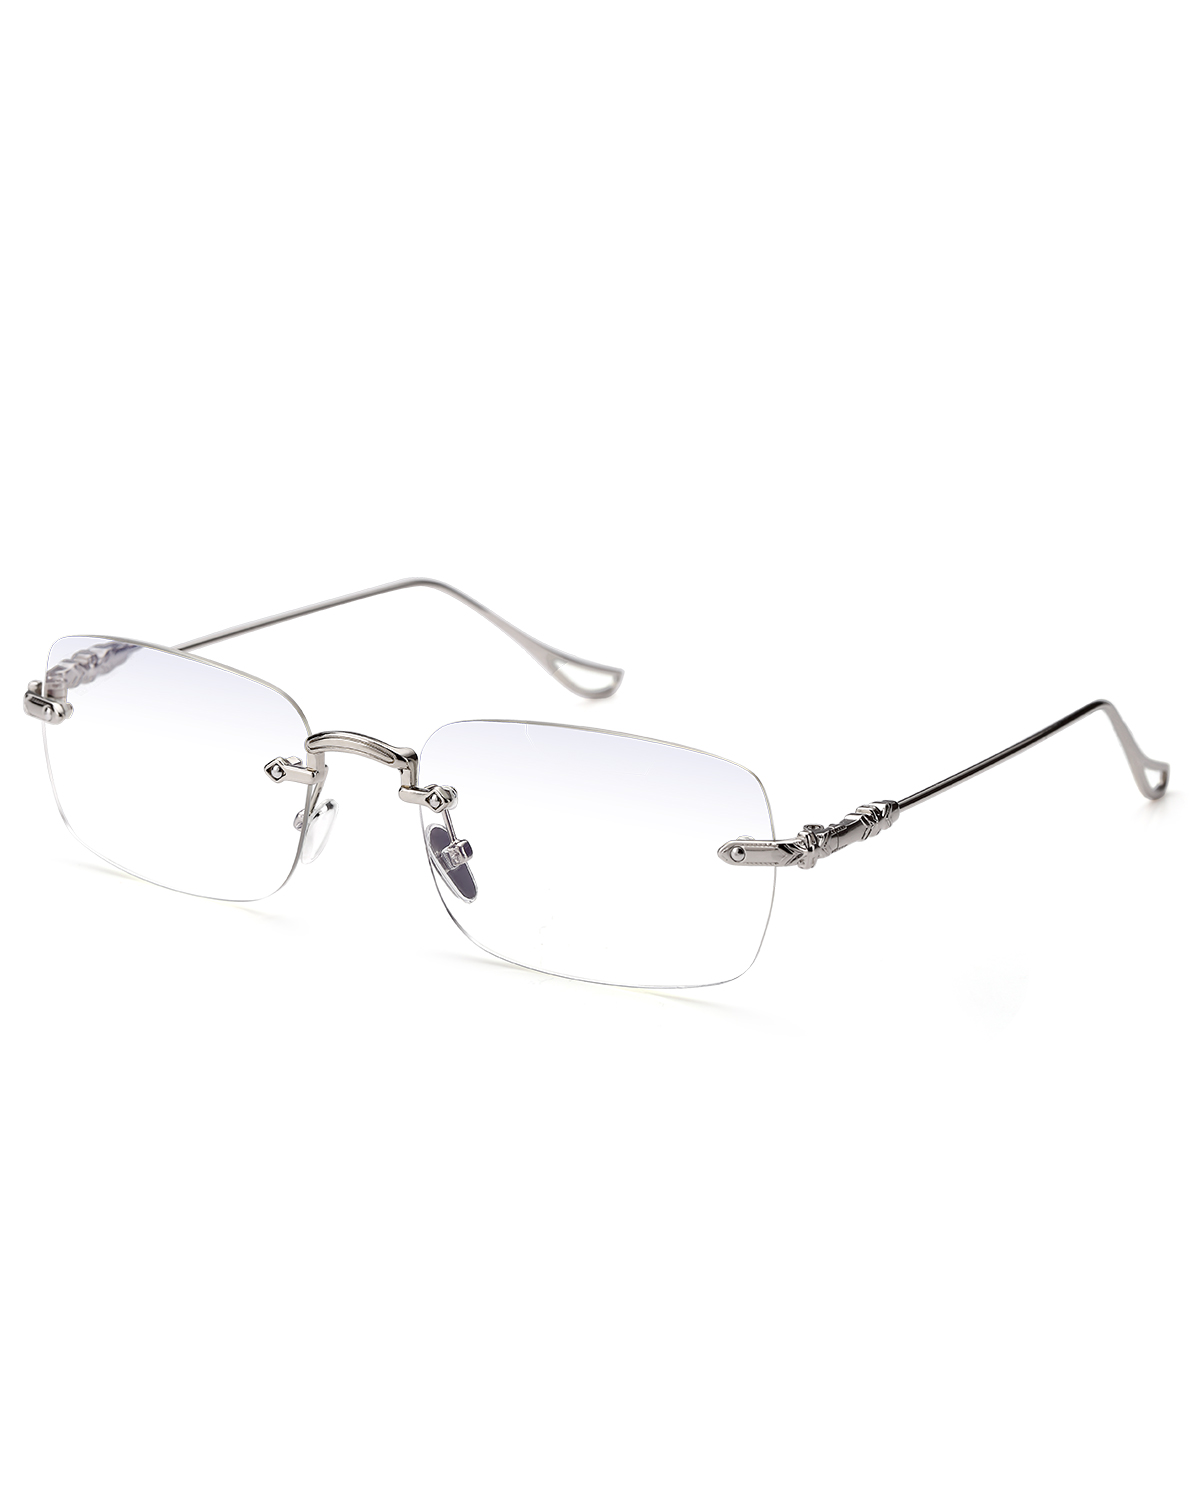 Computer Blue Light Eyeglasses for Men and Women